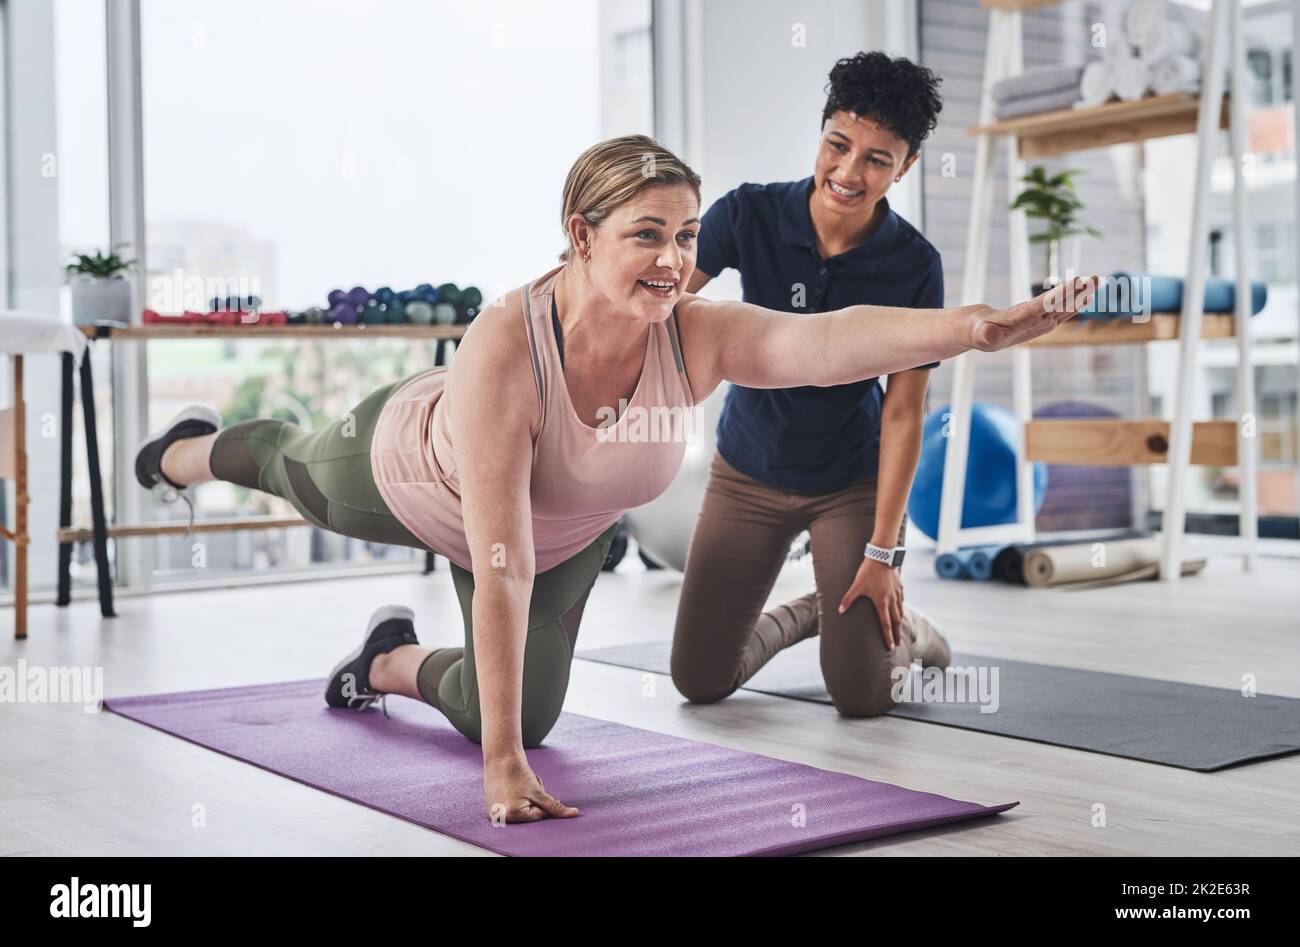 Le yoga fait tant de points positifs pour votre corps. Prise de vue en longueur d'une femme mature faisant des exercices d'équilibre et de mouvement avec son physiothérapeute dans un centre de réadaptation. Banque D'Images